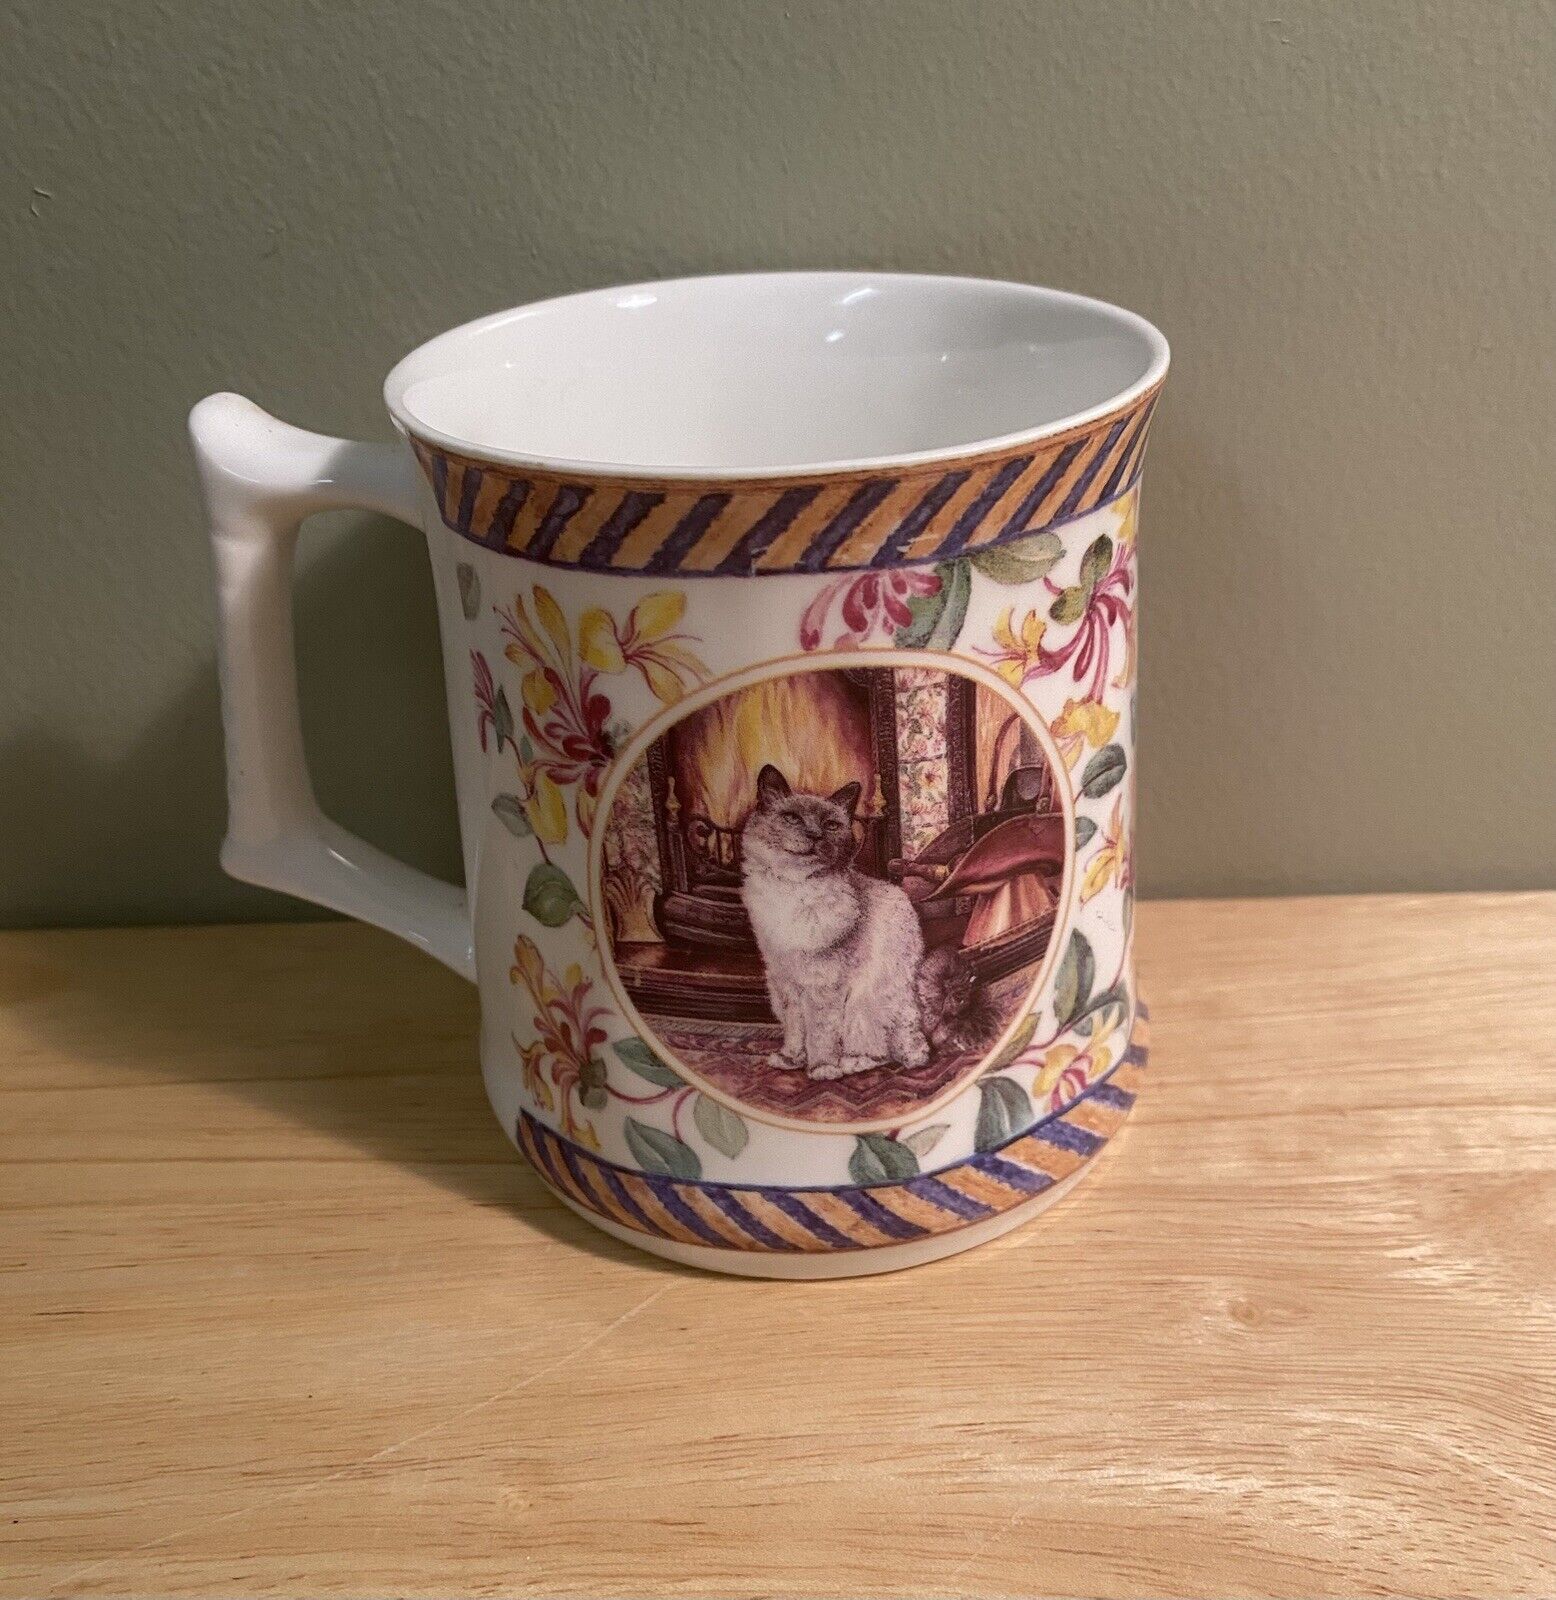 England Cat Mug Superior Ceramics Bone China Hand Crafted Coffee Cup